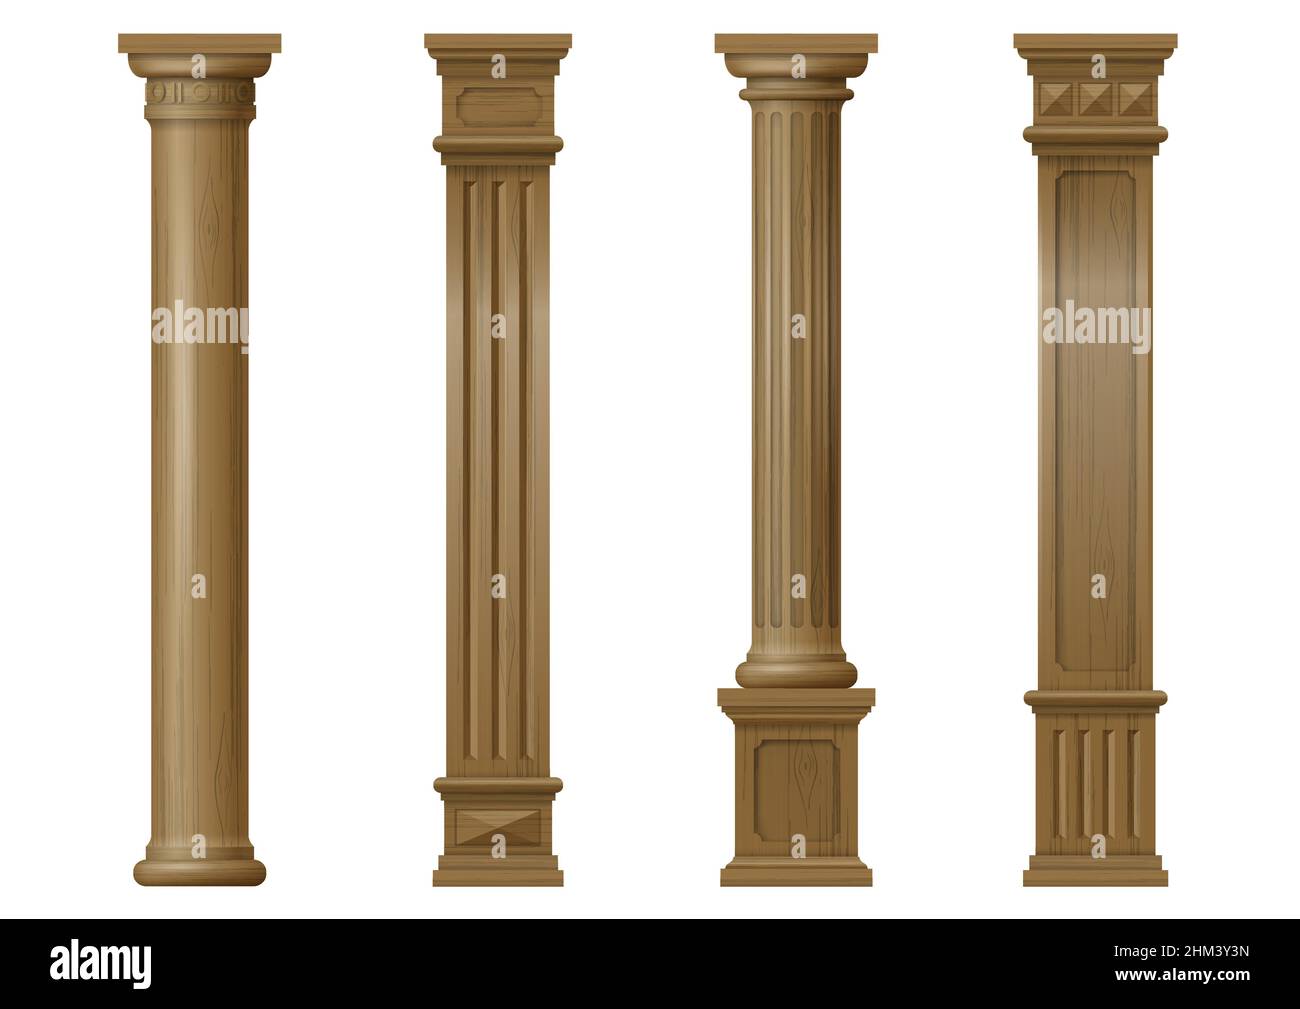 Ensemble de colonnes architecturales sculptées en bois classique vintage avec ornement pour l'intérieur ou la façade.Éléments de menuiserie ou baumes.Graphiques vectoriels Illustration de Vecteur